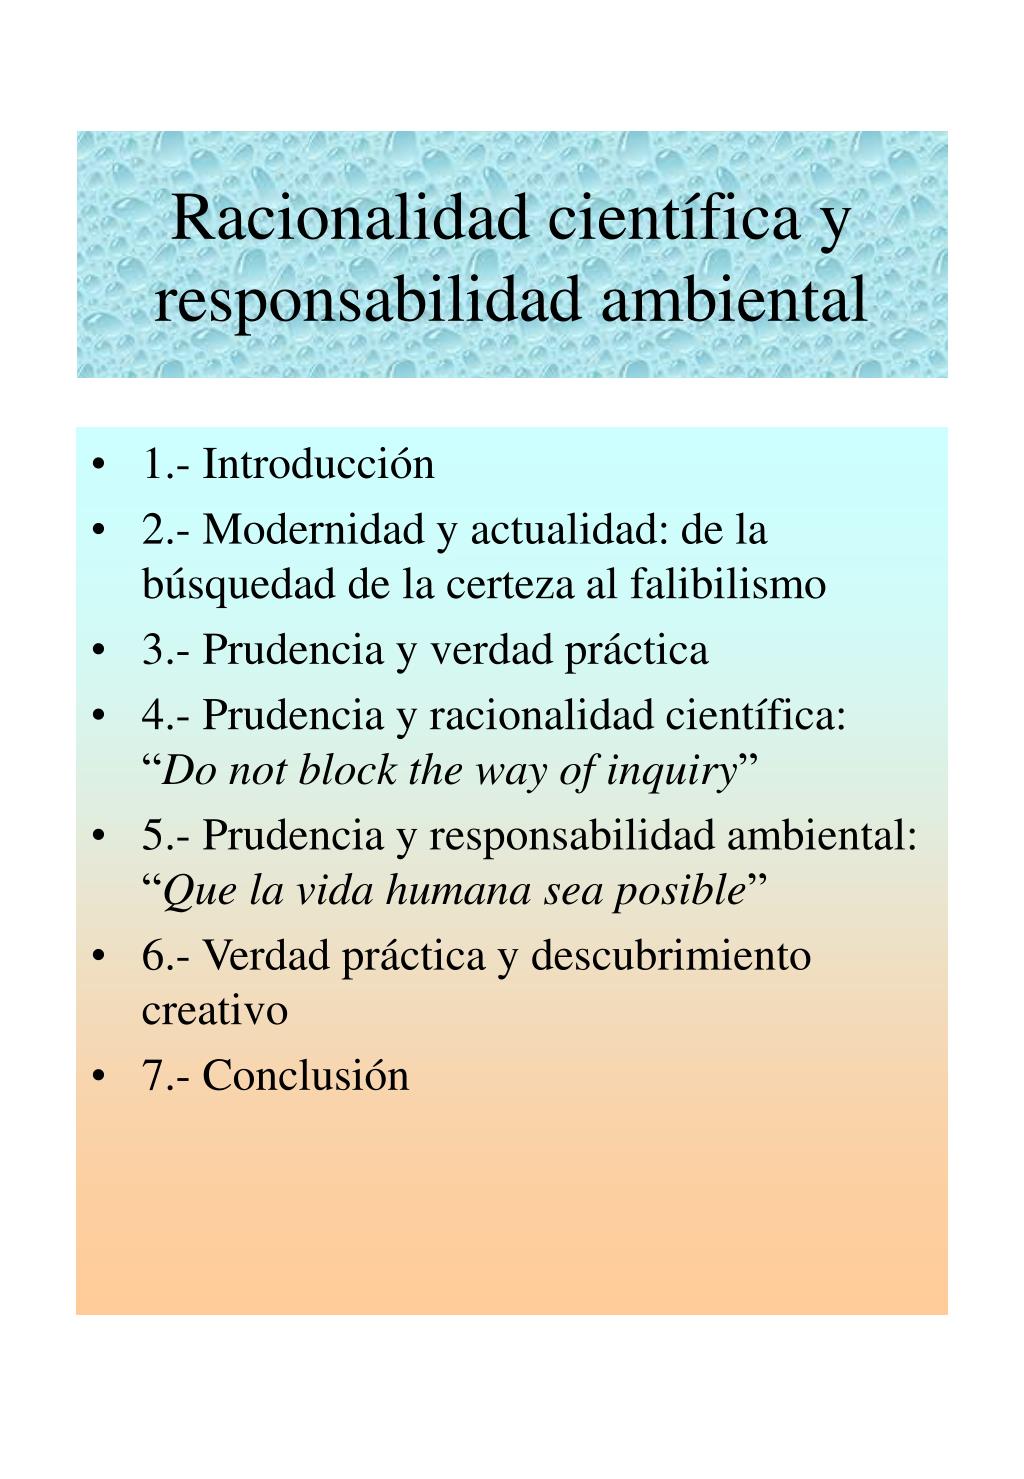 PPT - Racionalidad científica y responsabilidad ambiental PowerPoint  Presentation - ID:910975